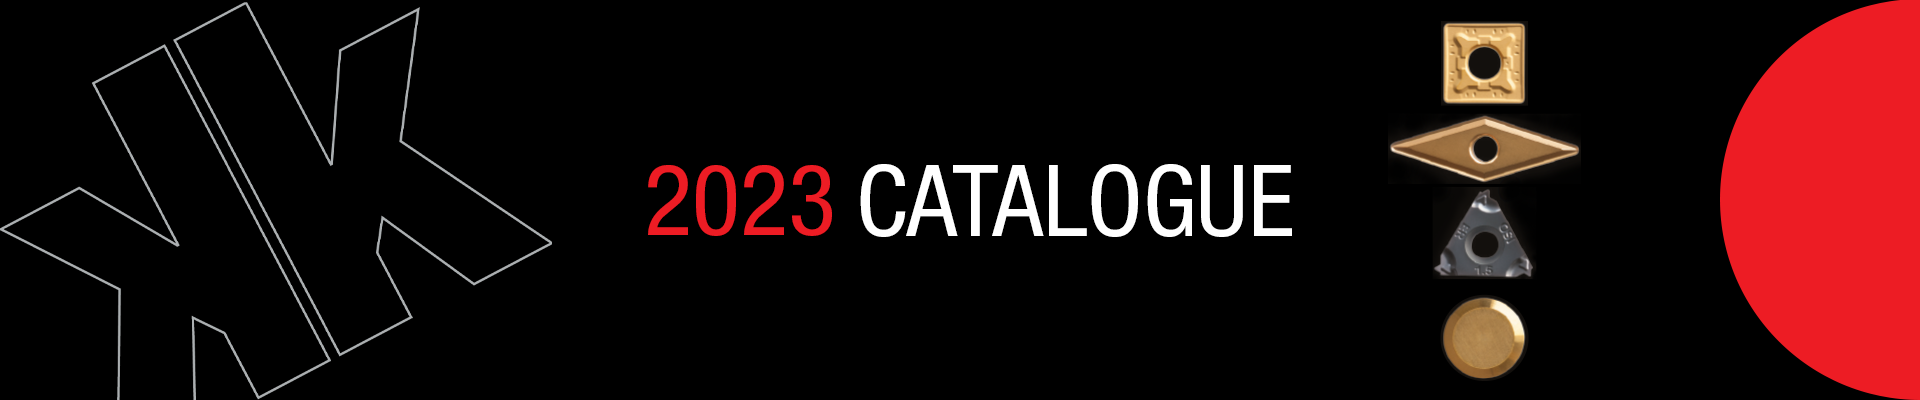 Nikko Tools 2023 Catalogue